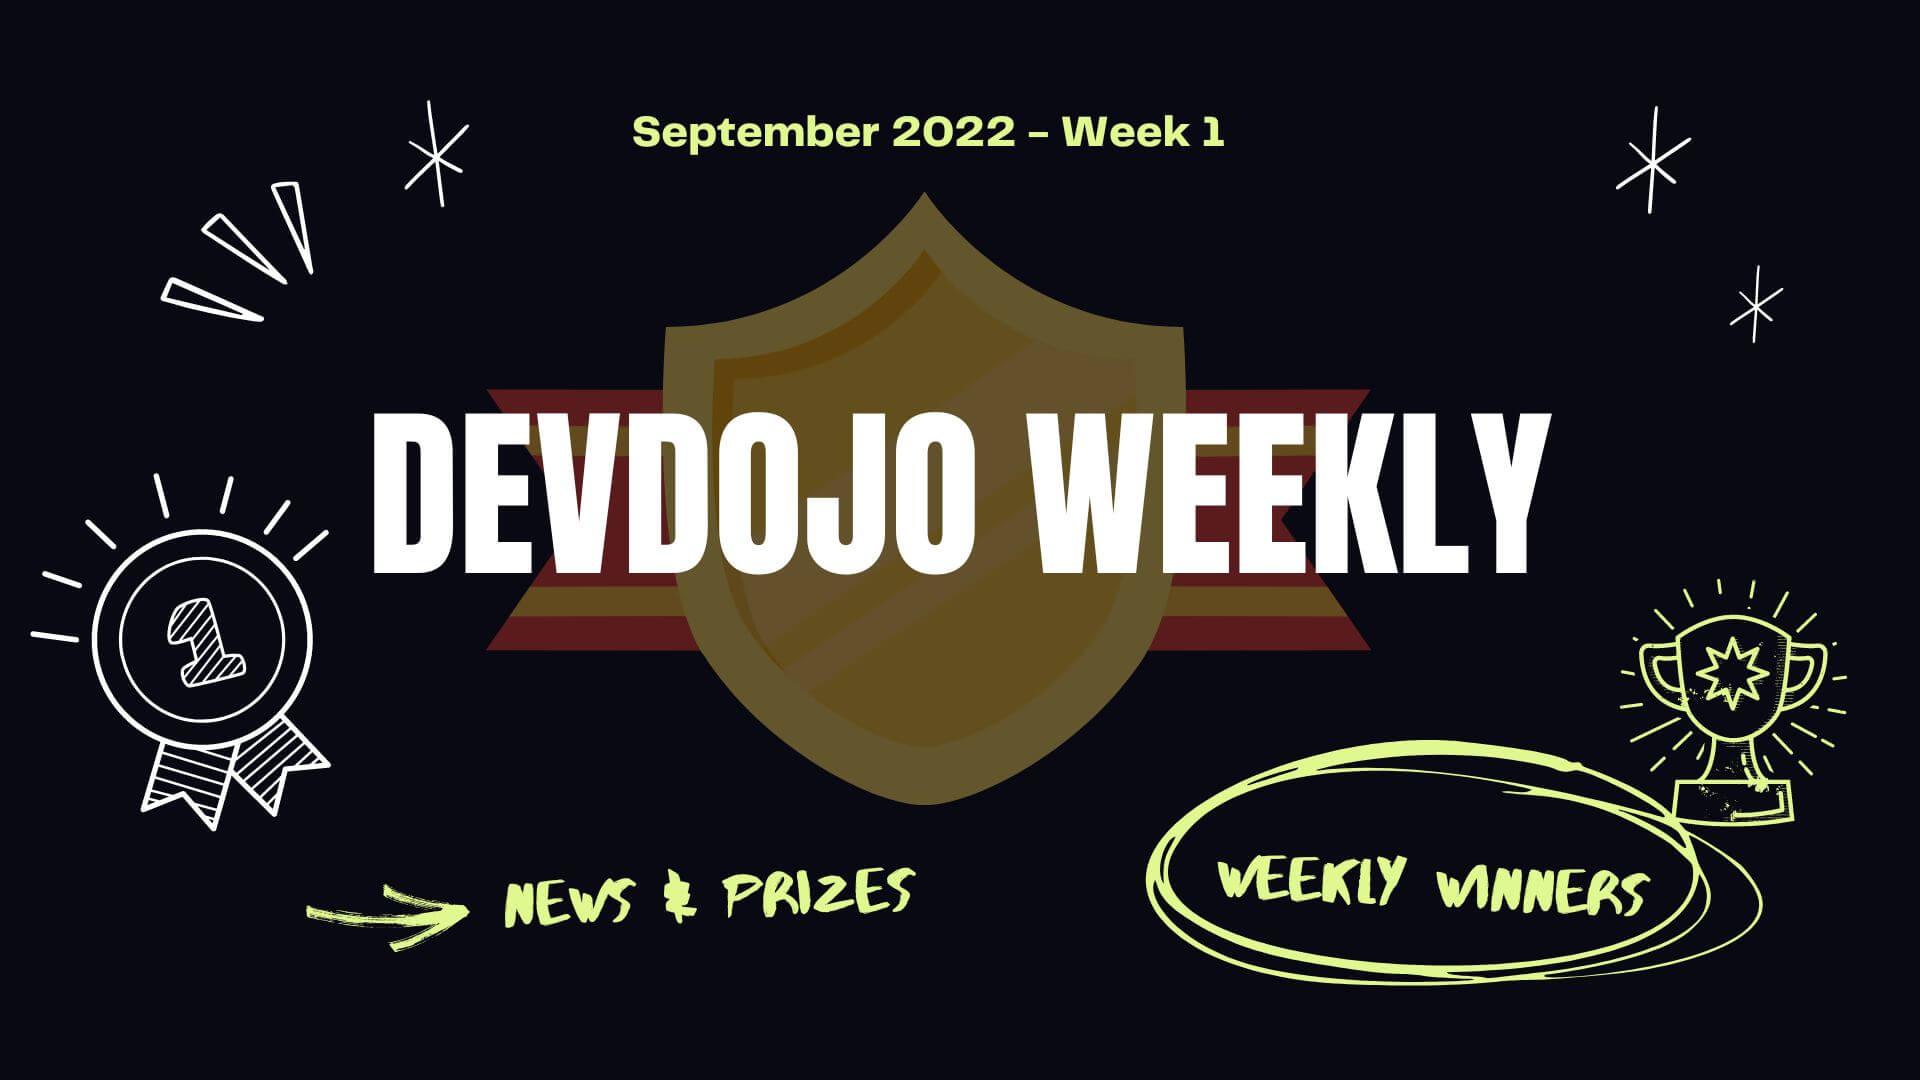 DevDojo Weekly - Sept 2022 - Week 1